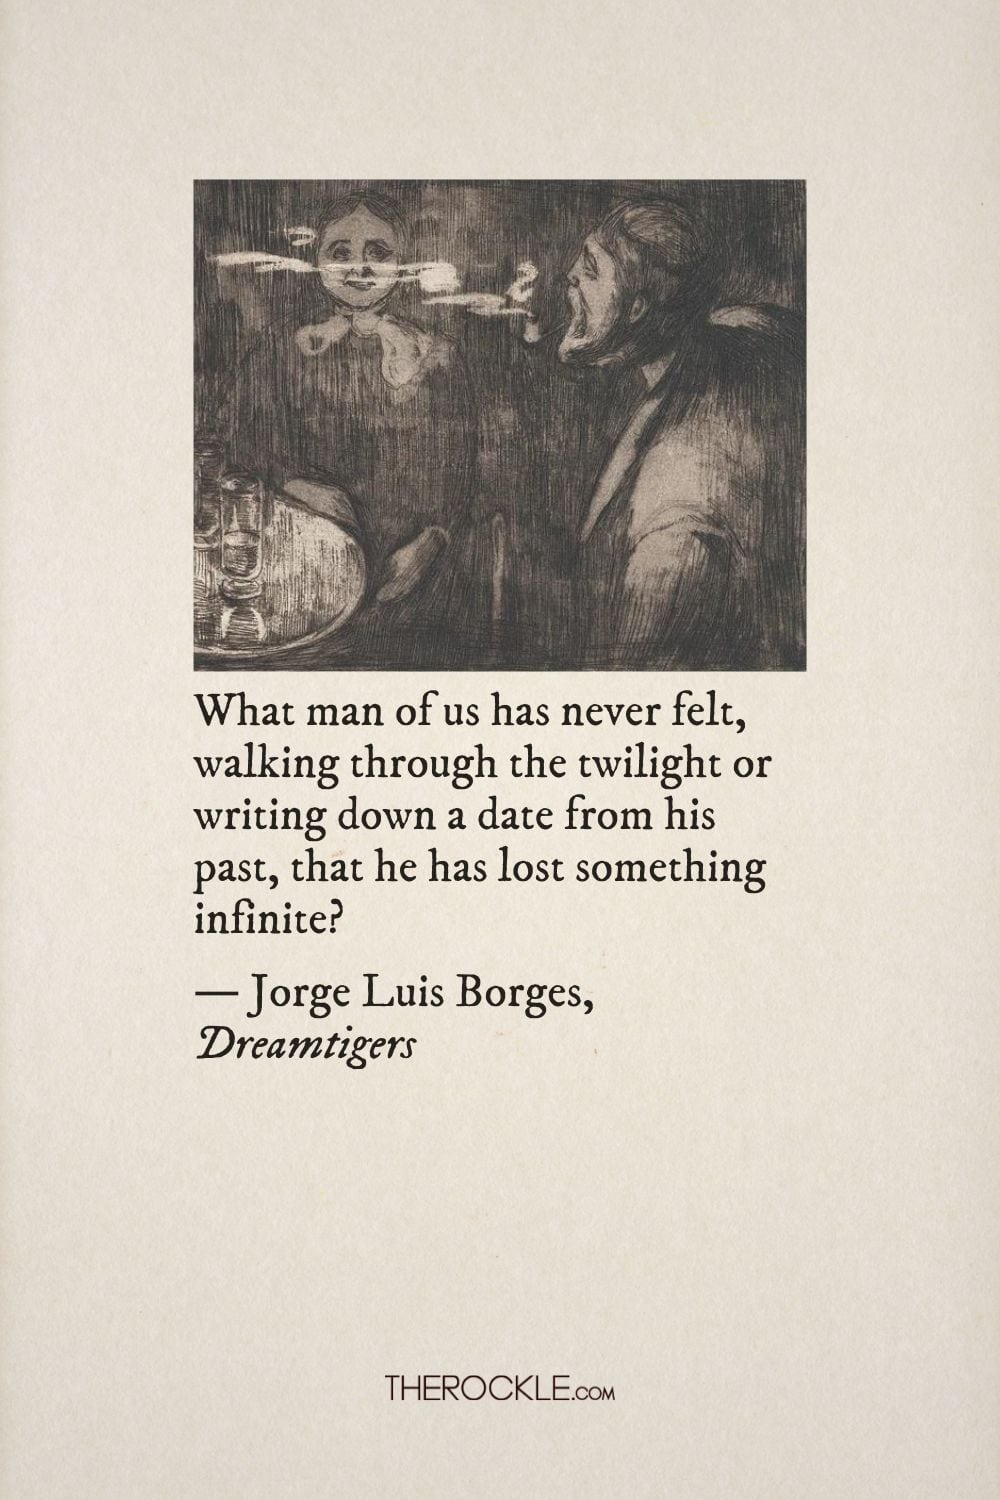 Jorge Luis Borges on nostalgia